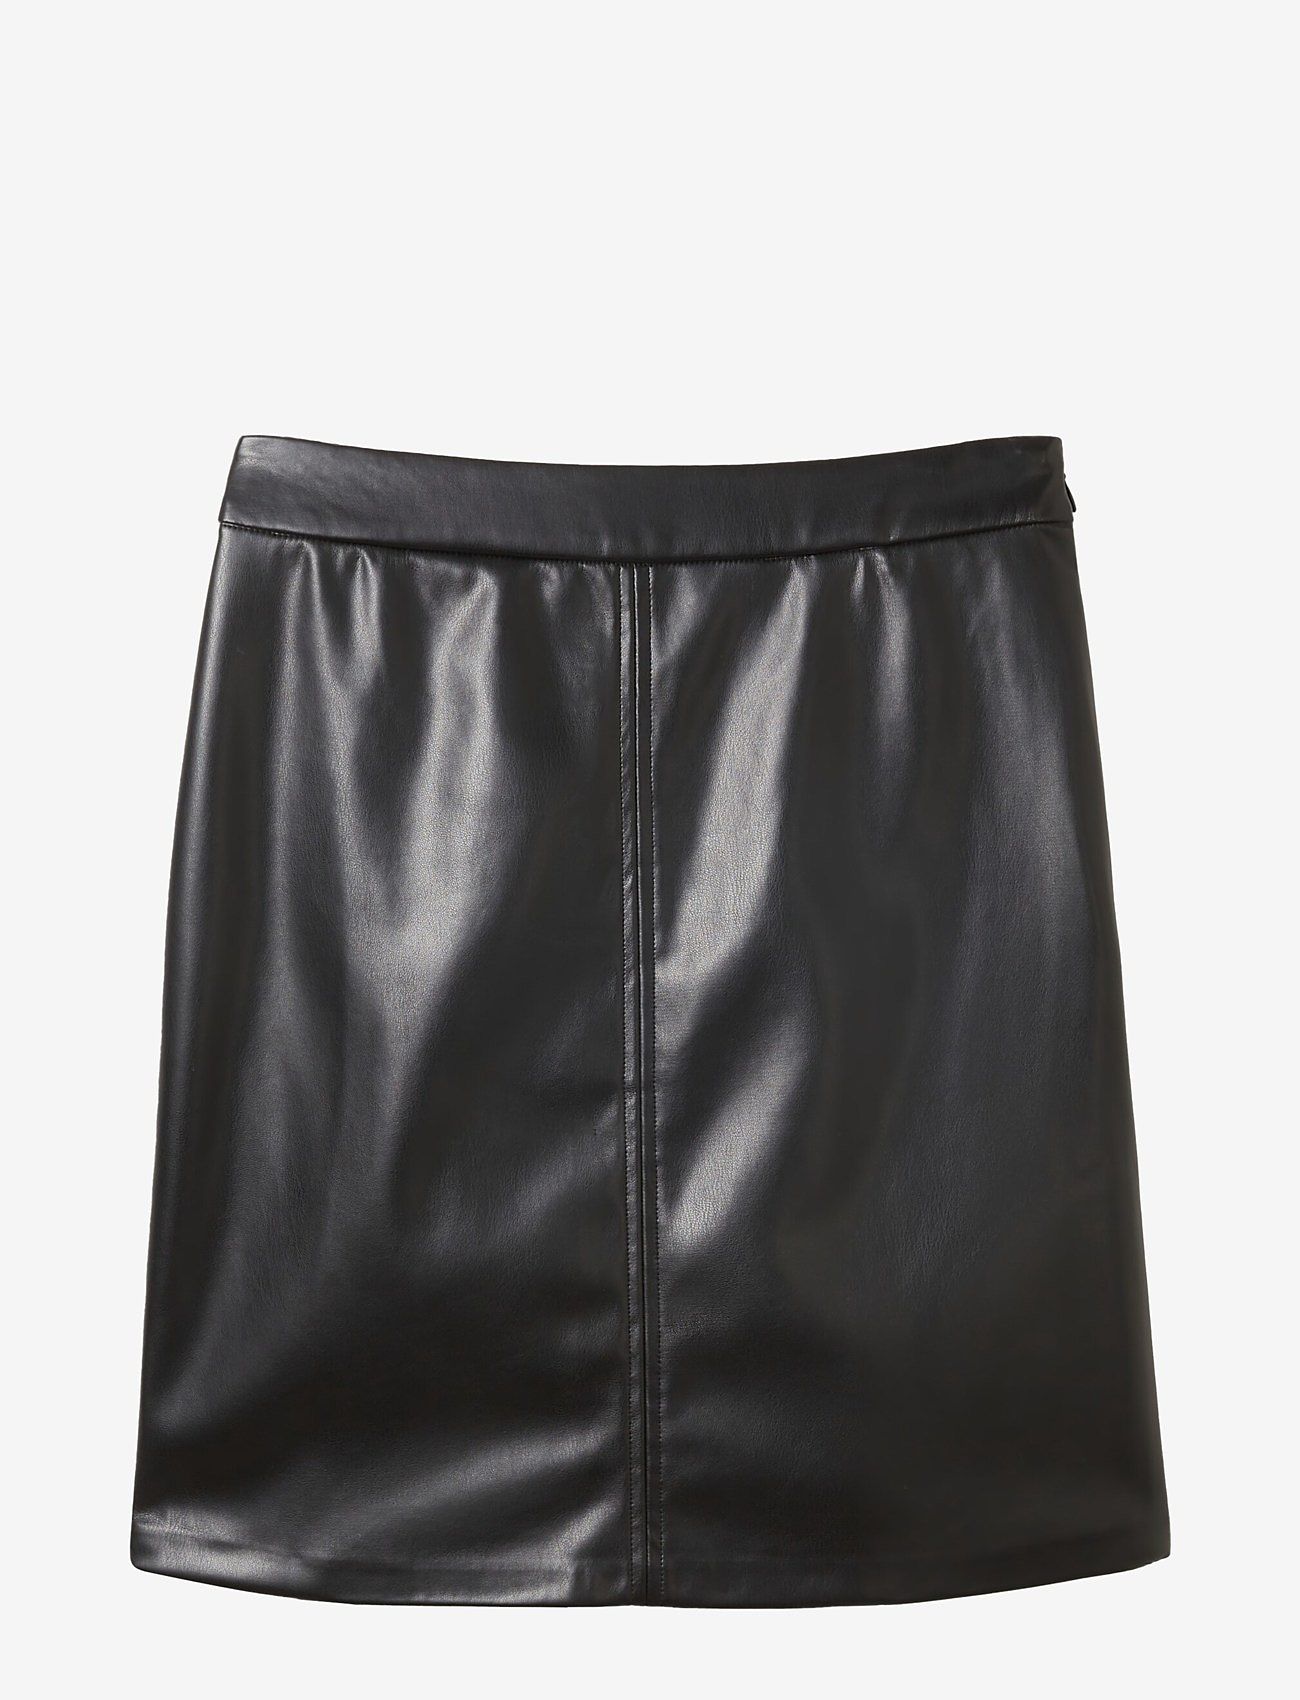 Tom Tailor - skirt fake leather - korte rokken - deep black - 0